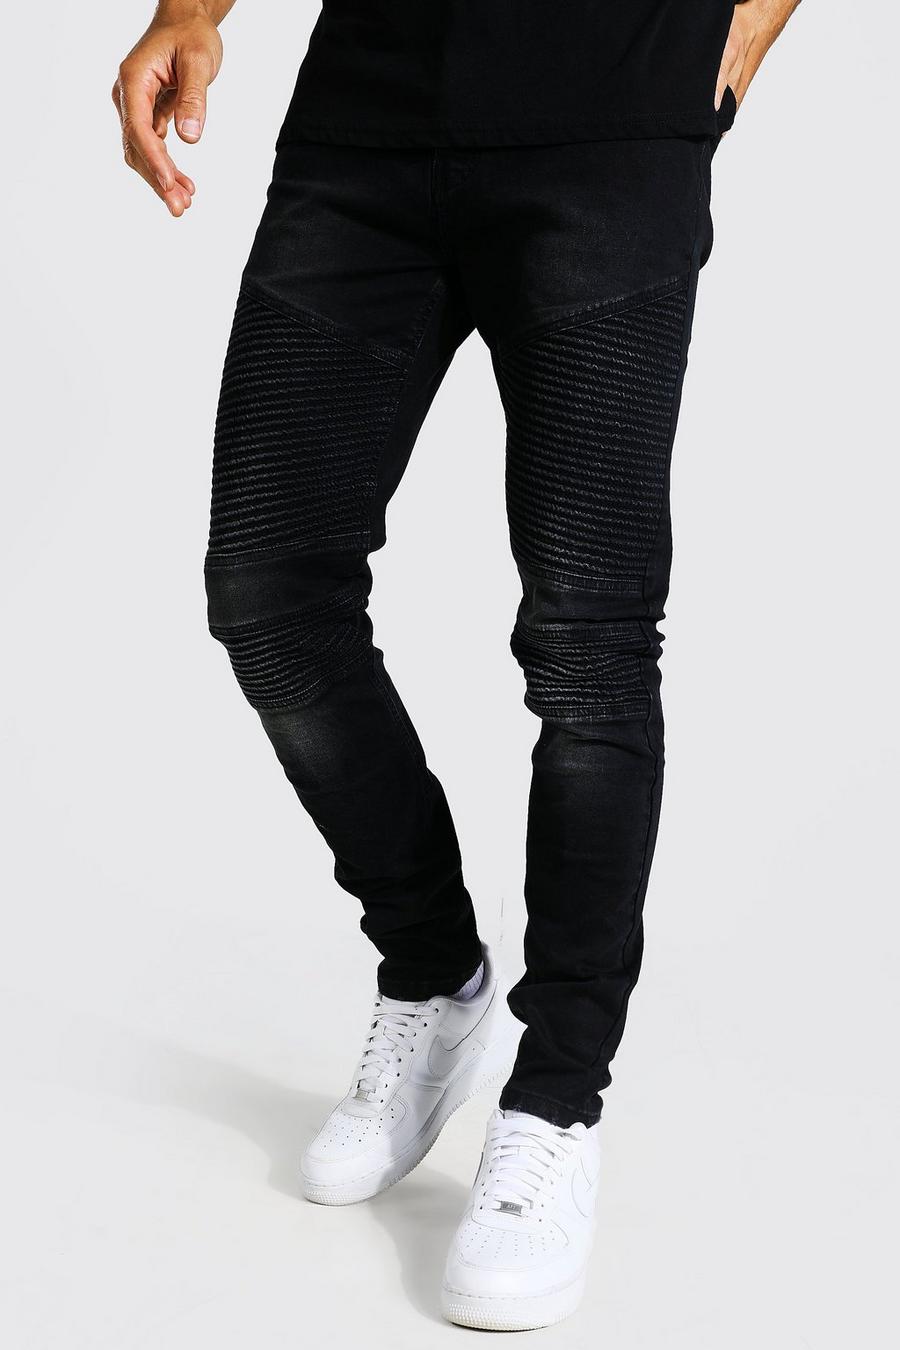 Tall Stretch Skinny Biker-Jeans, Washed black